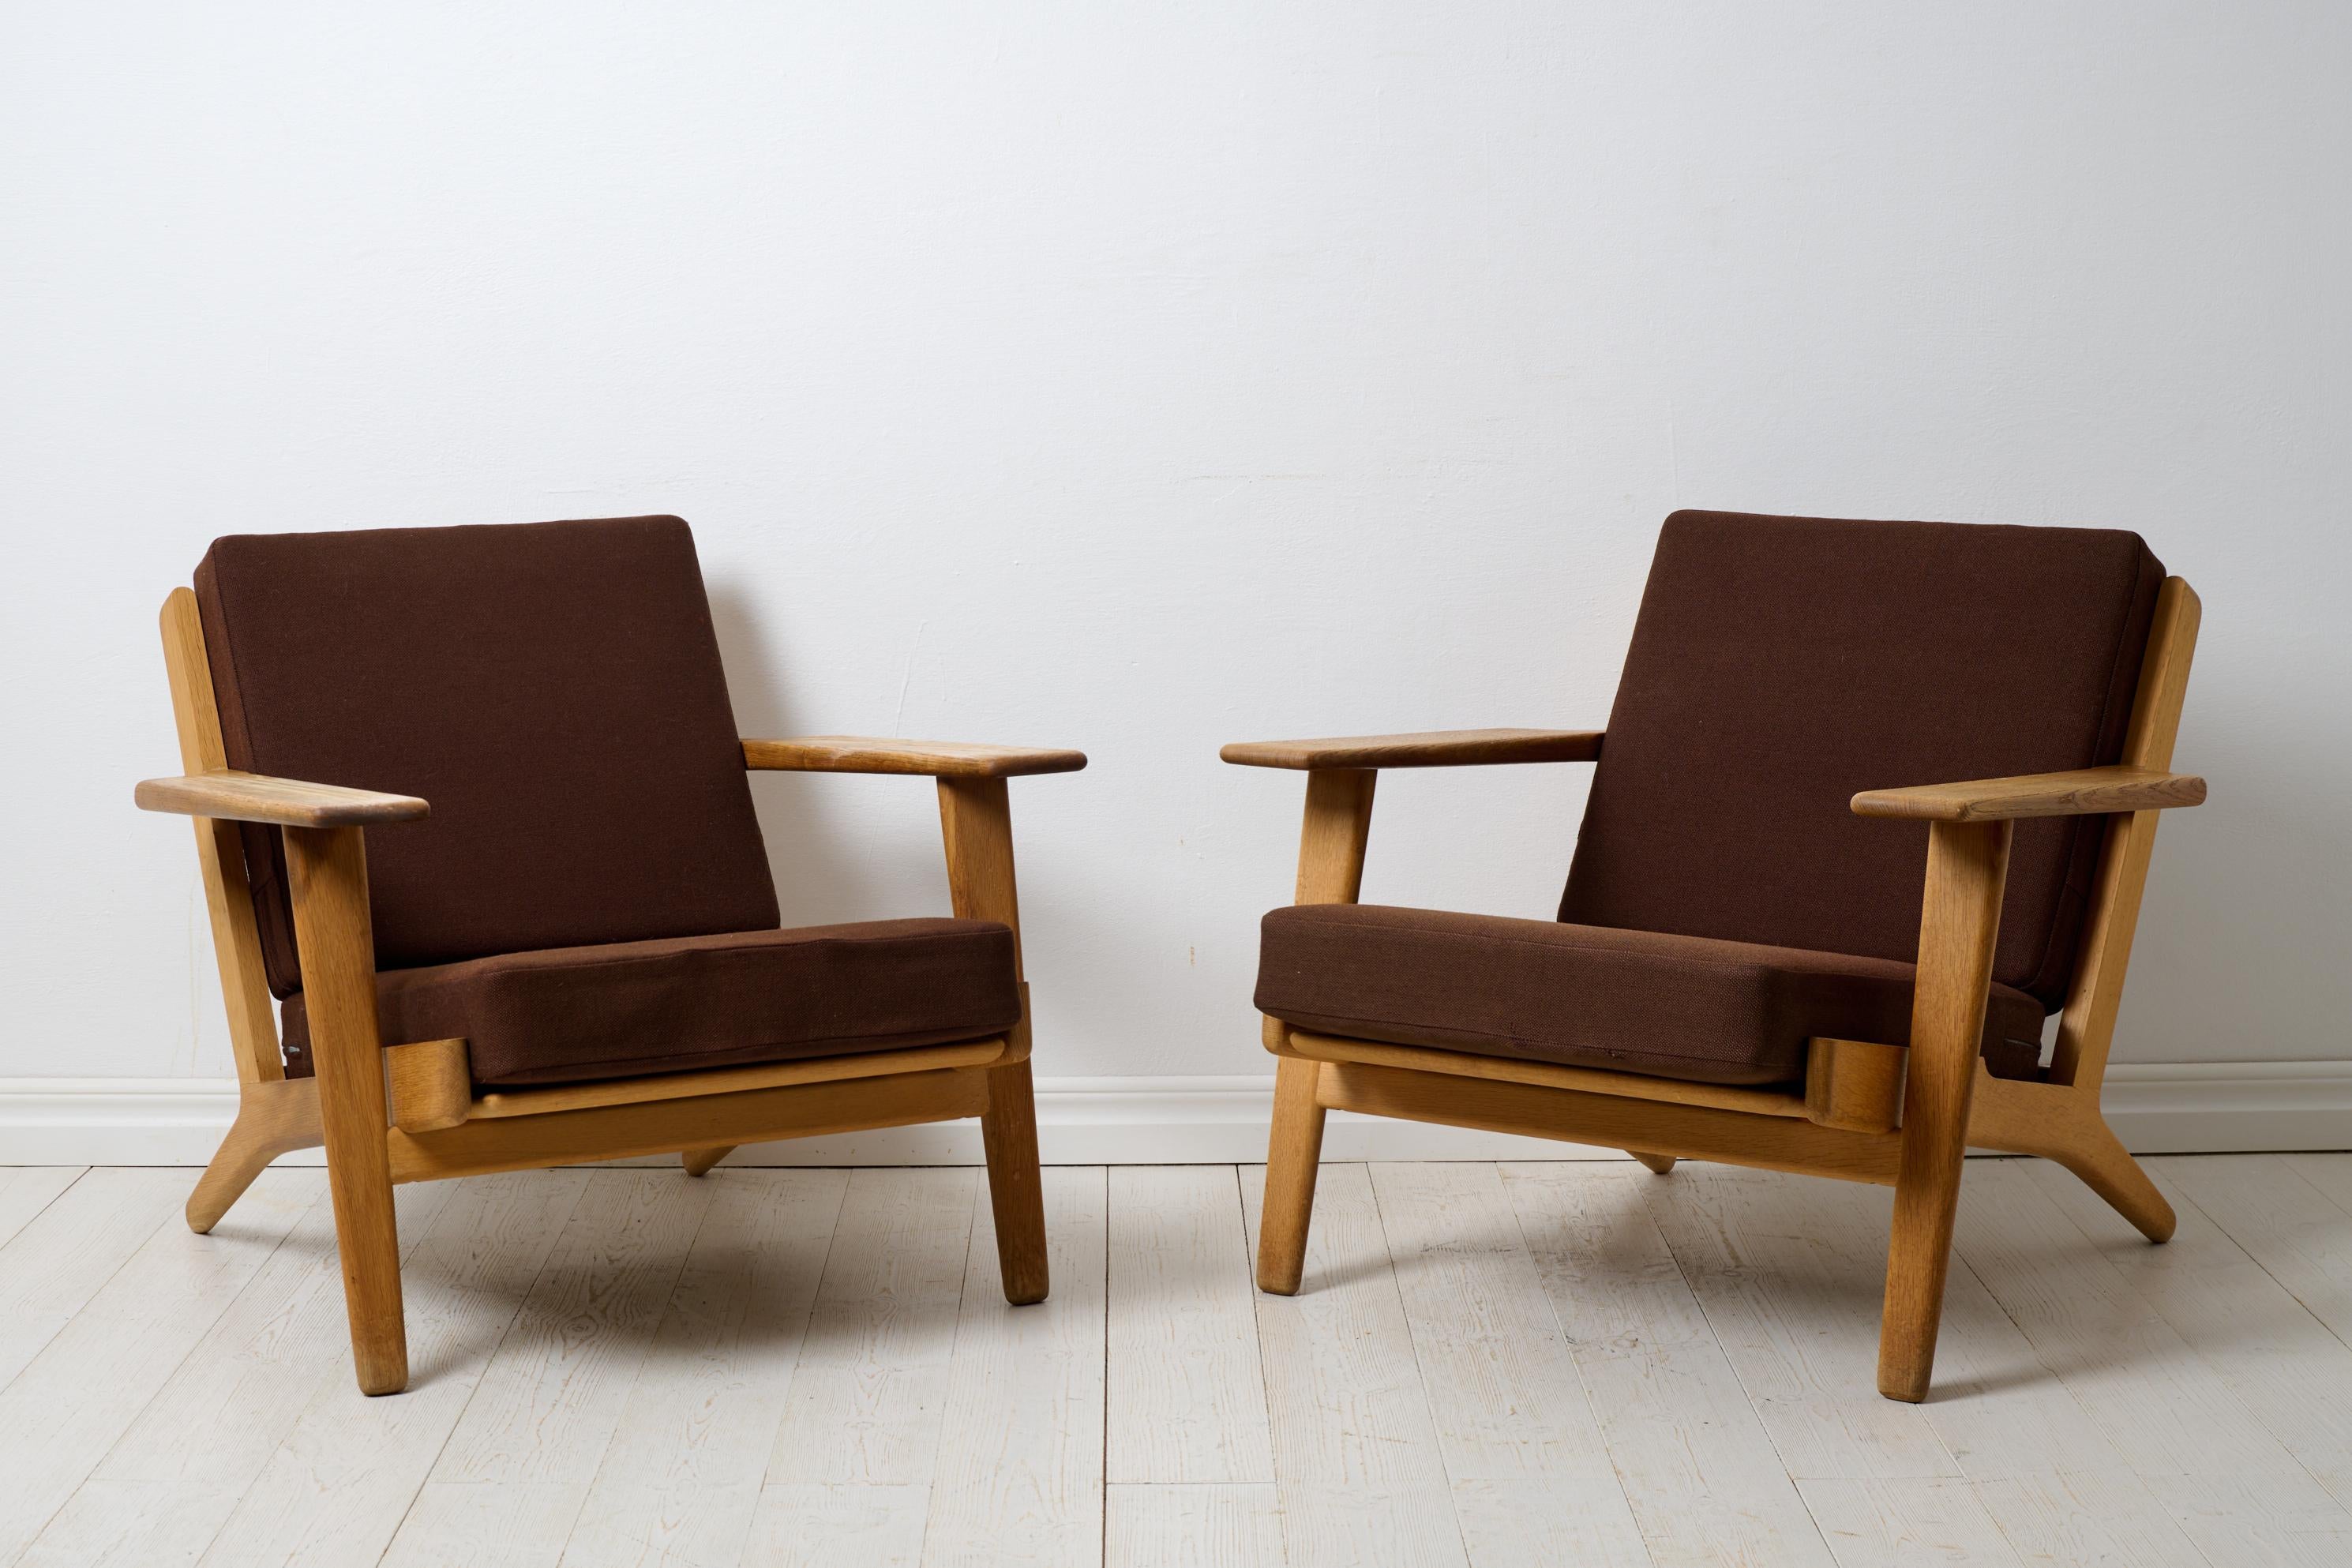 Fauteuils Vintage Hans J. Wegner modèle GE-290 pour Getama Gedsted, Danemark. Les fauteuils sont un classique du milieu du siècle signé par l'un des plus grands noms de l'époque, Hans J. Wegner (Danemark, 1914-2007). Cette paire de fauteuils est